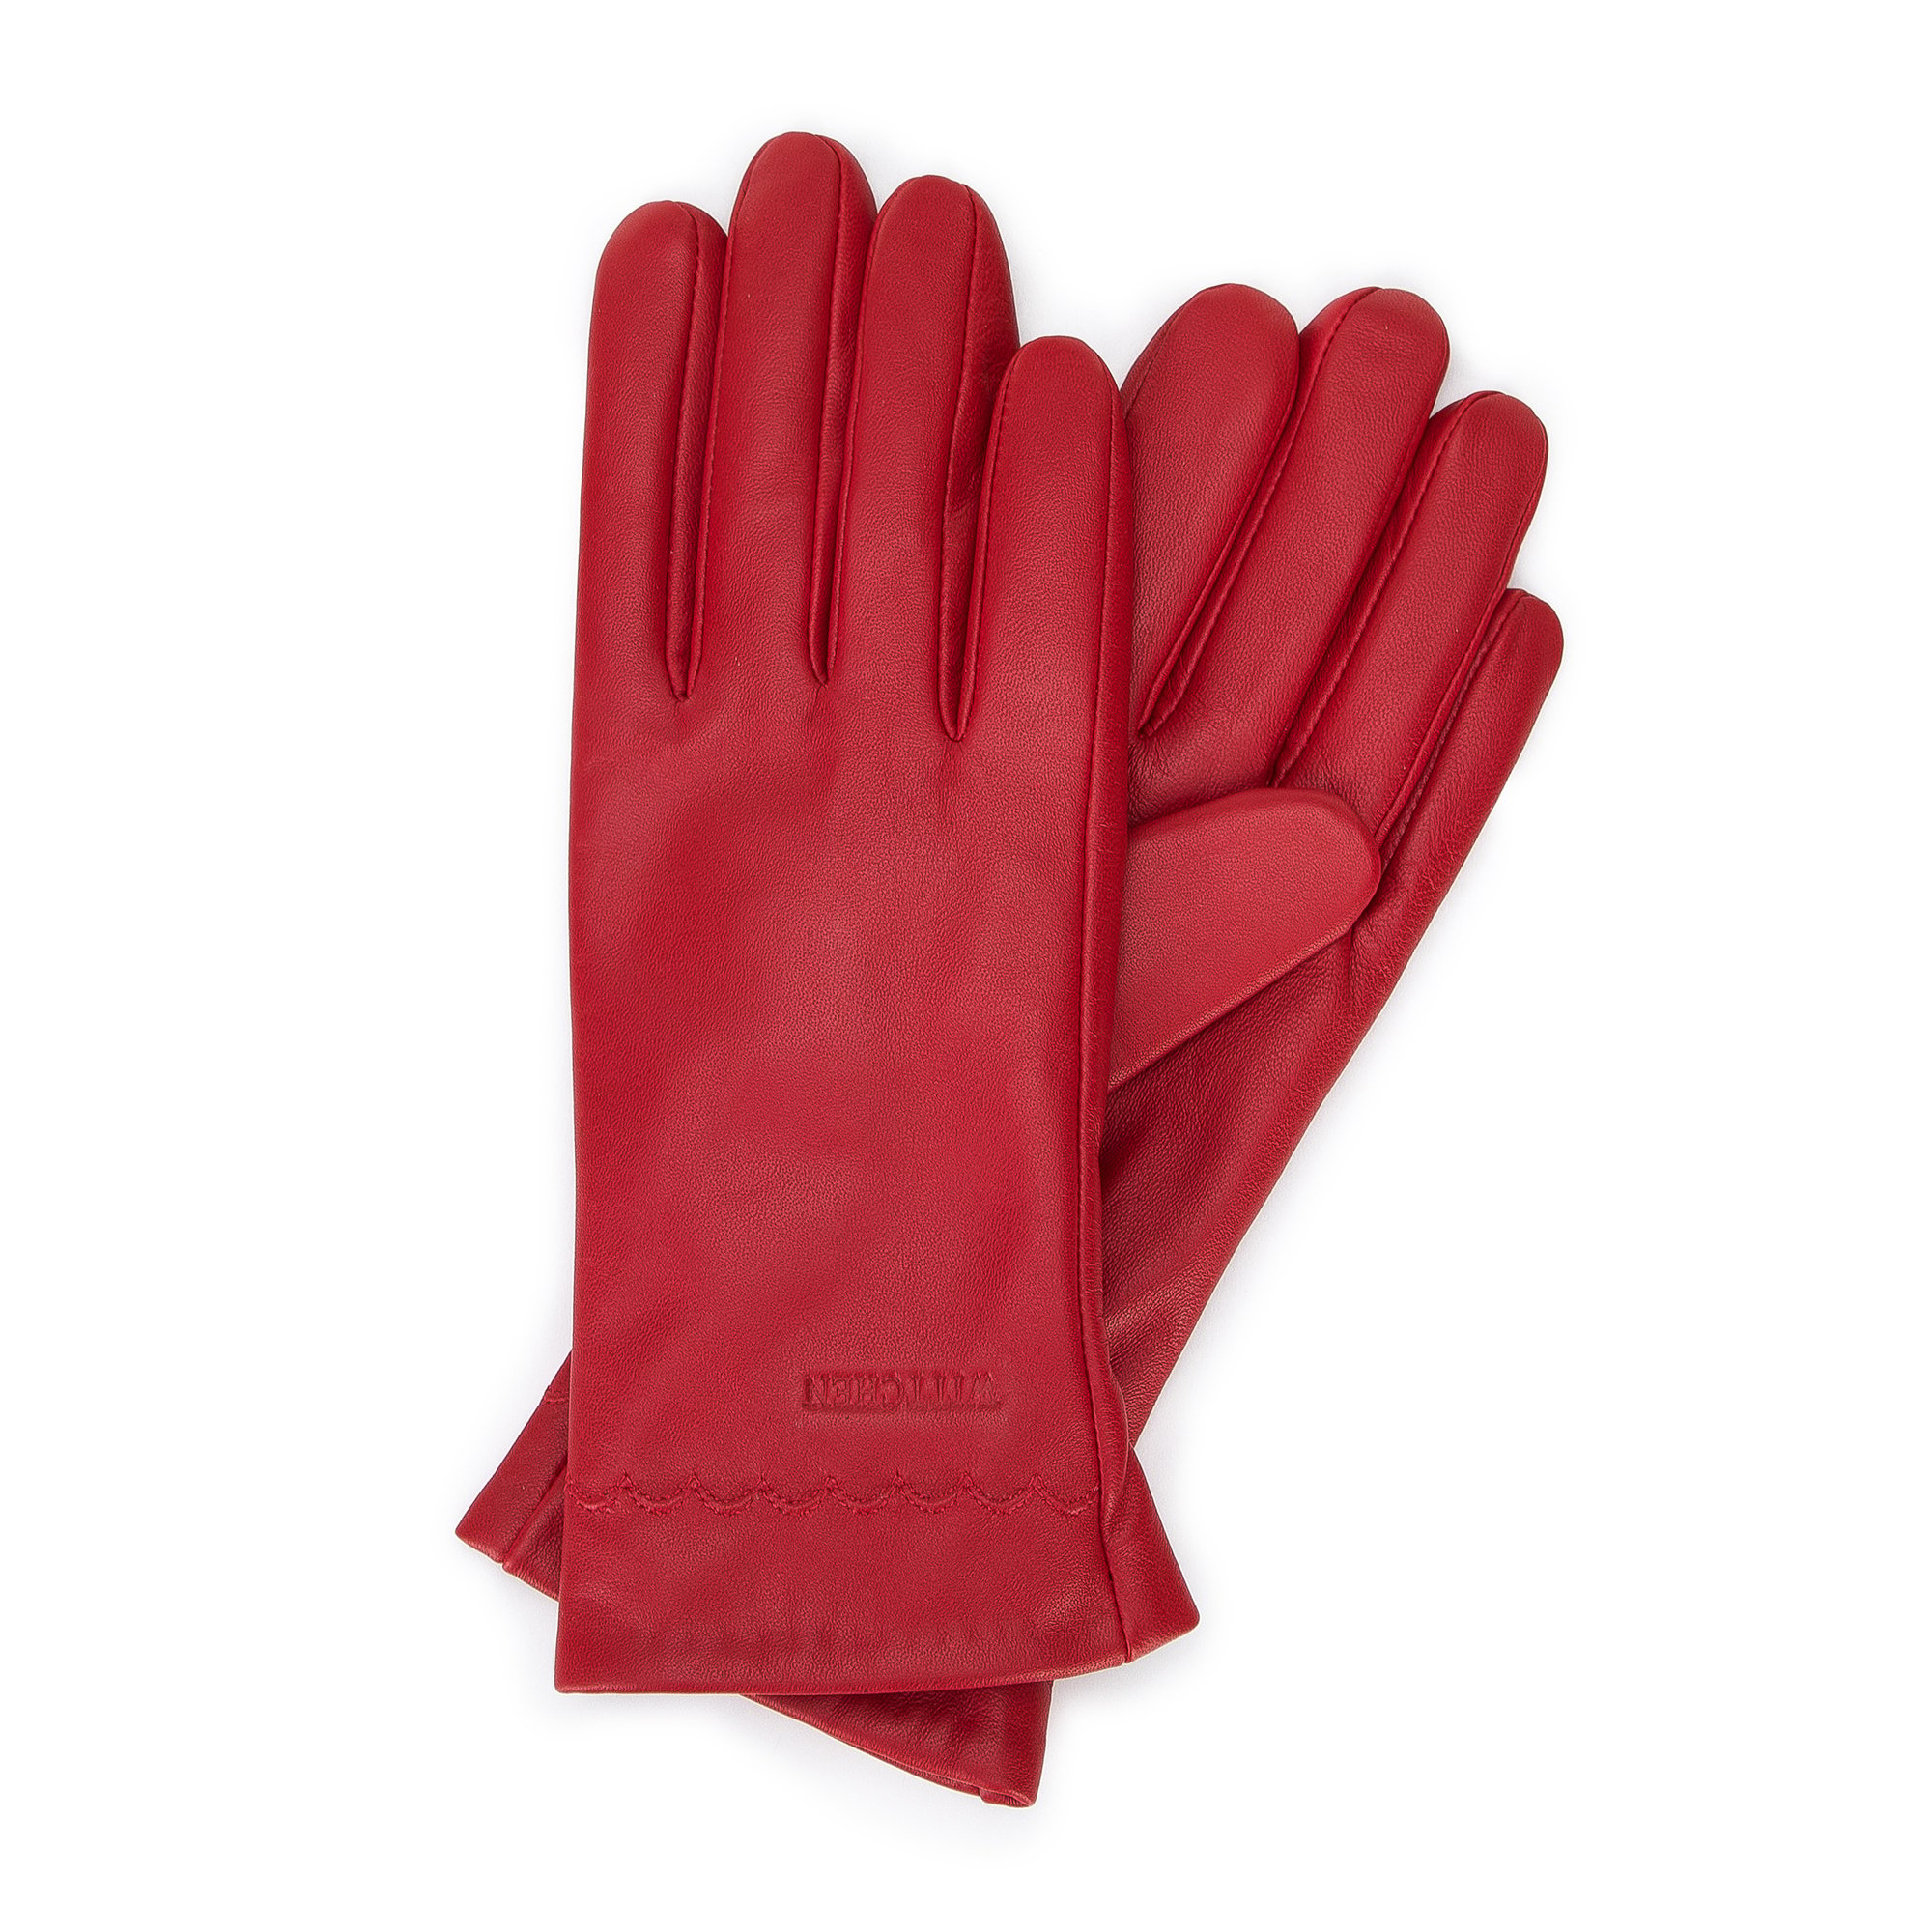 Damskie rękawiczki skórzane z wyszytym wzorem czerwone